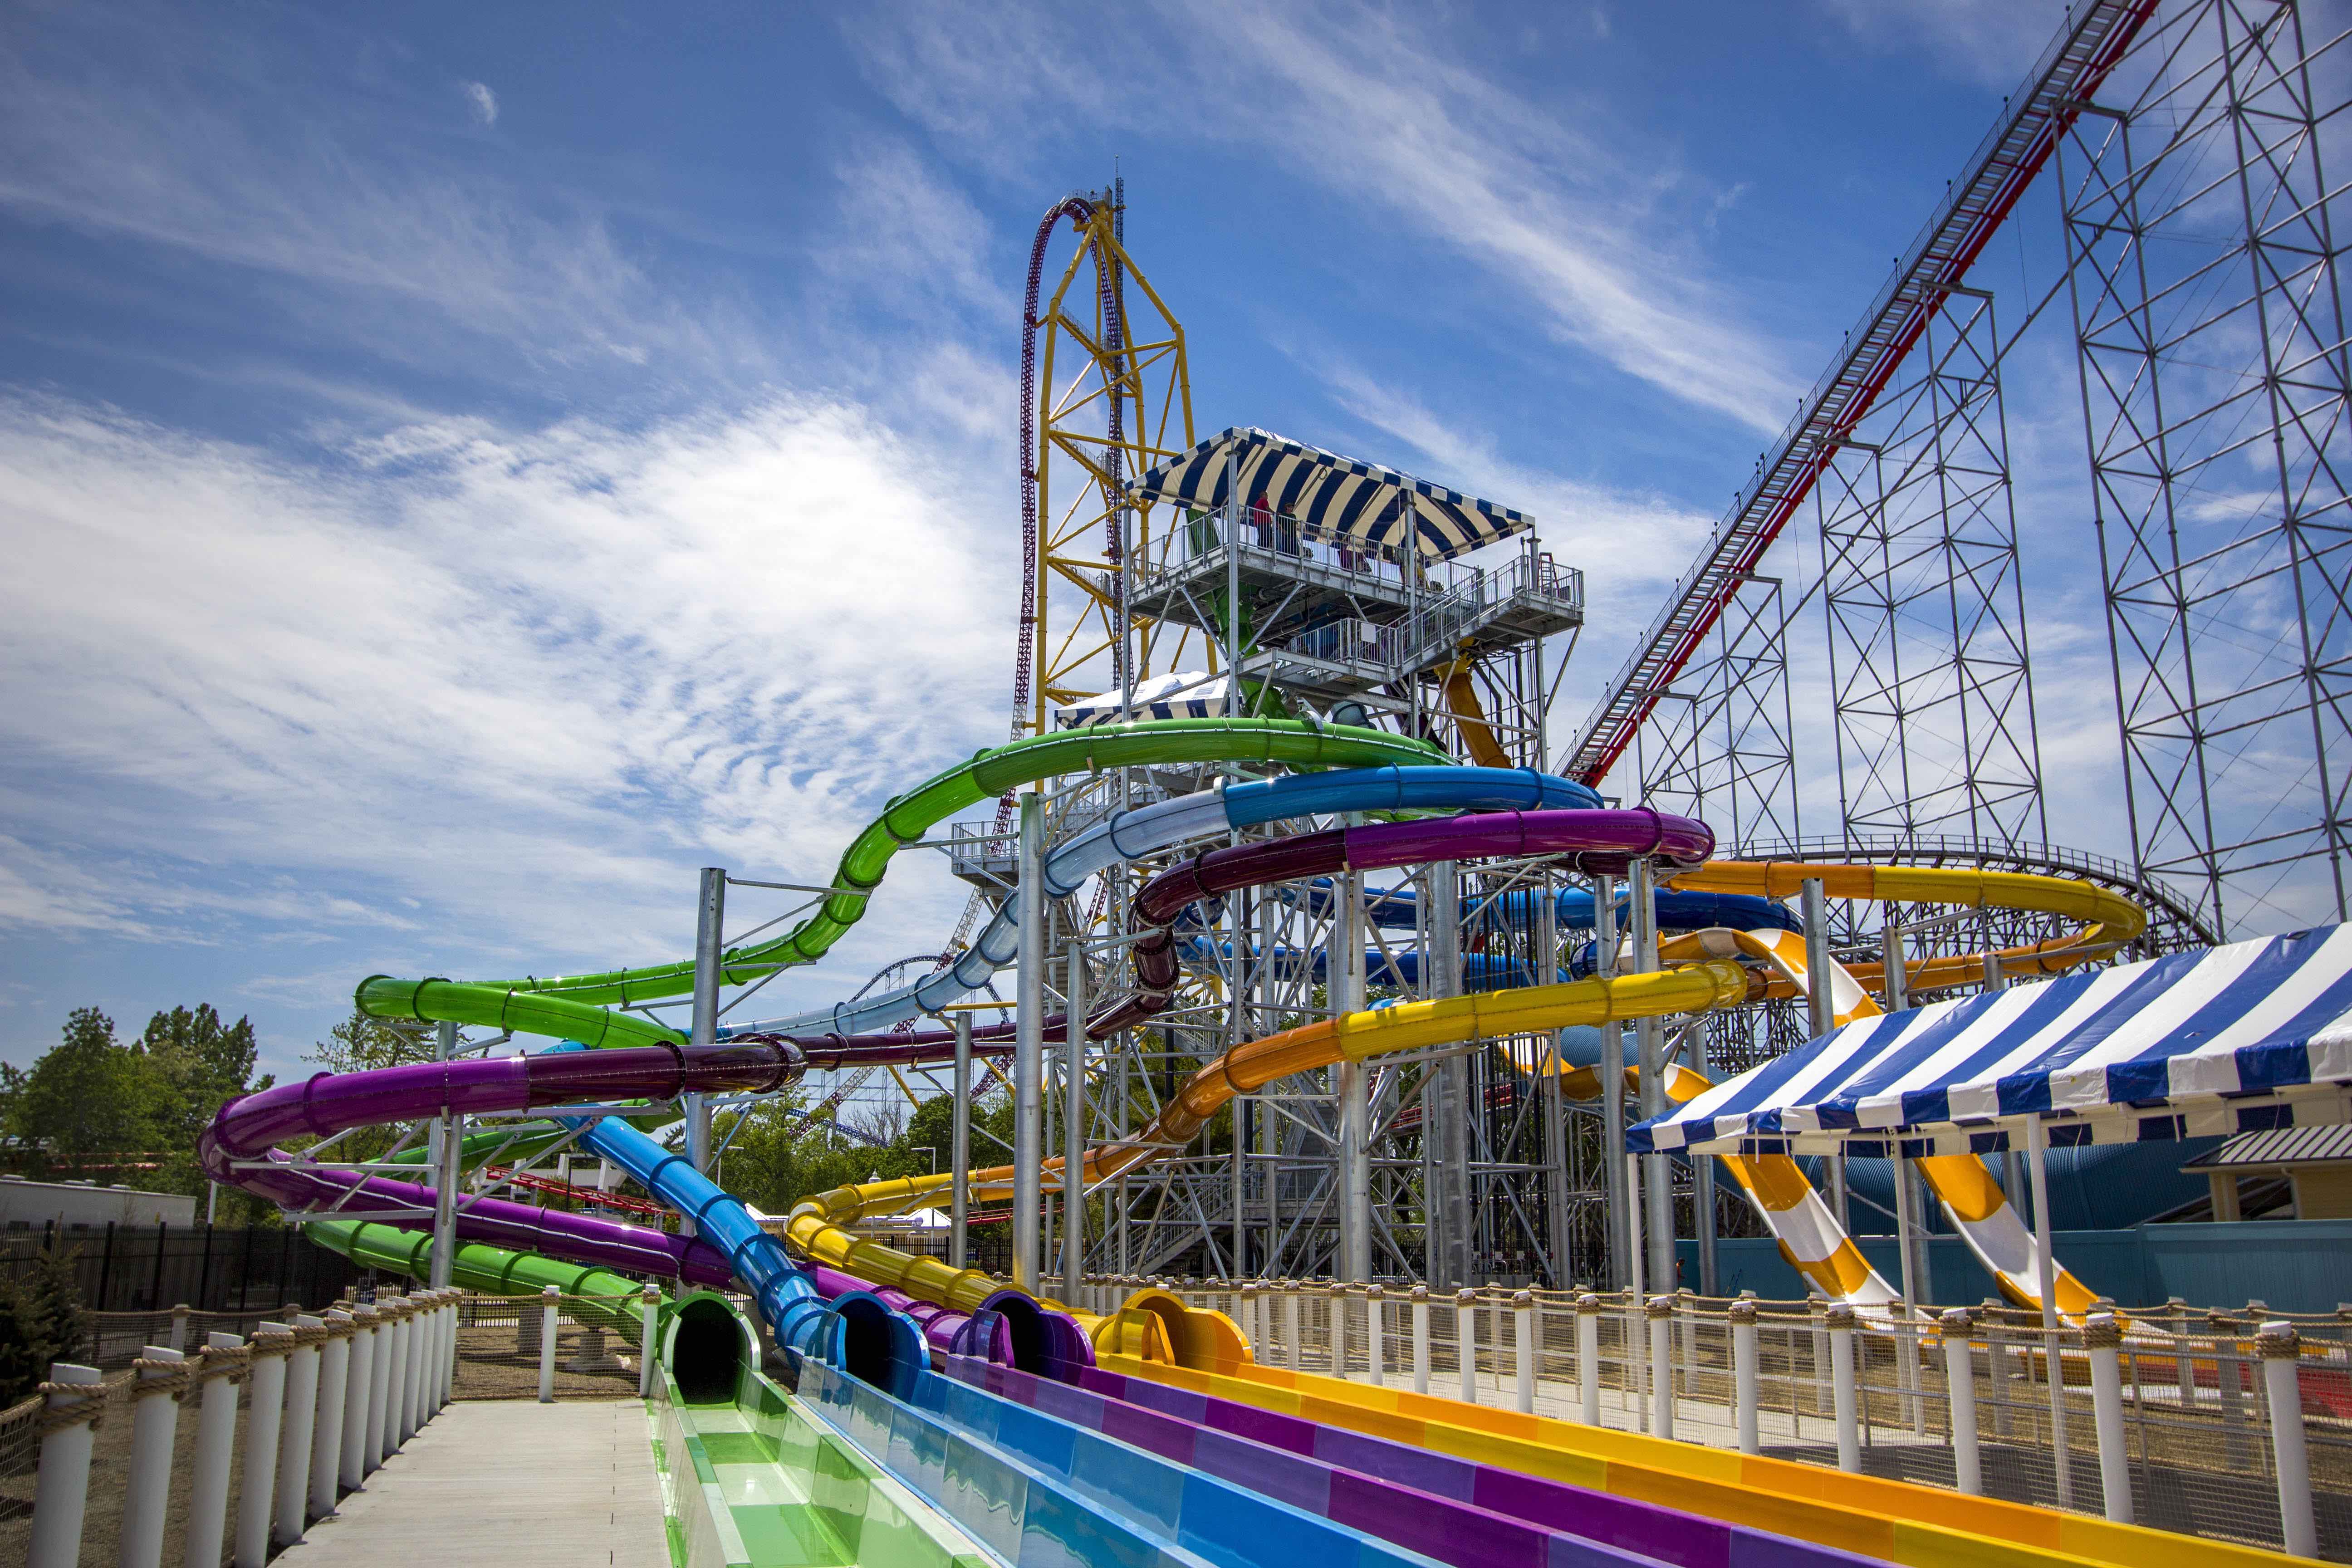 New Cedar Point Shores Waterpark Opens Park World Online Theme Park Amusement Park And